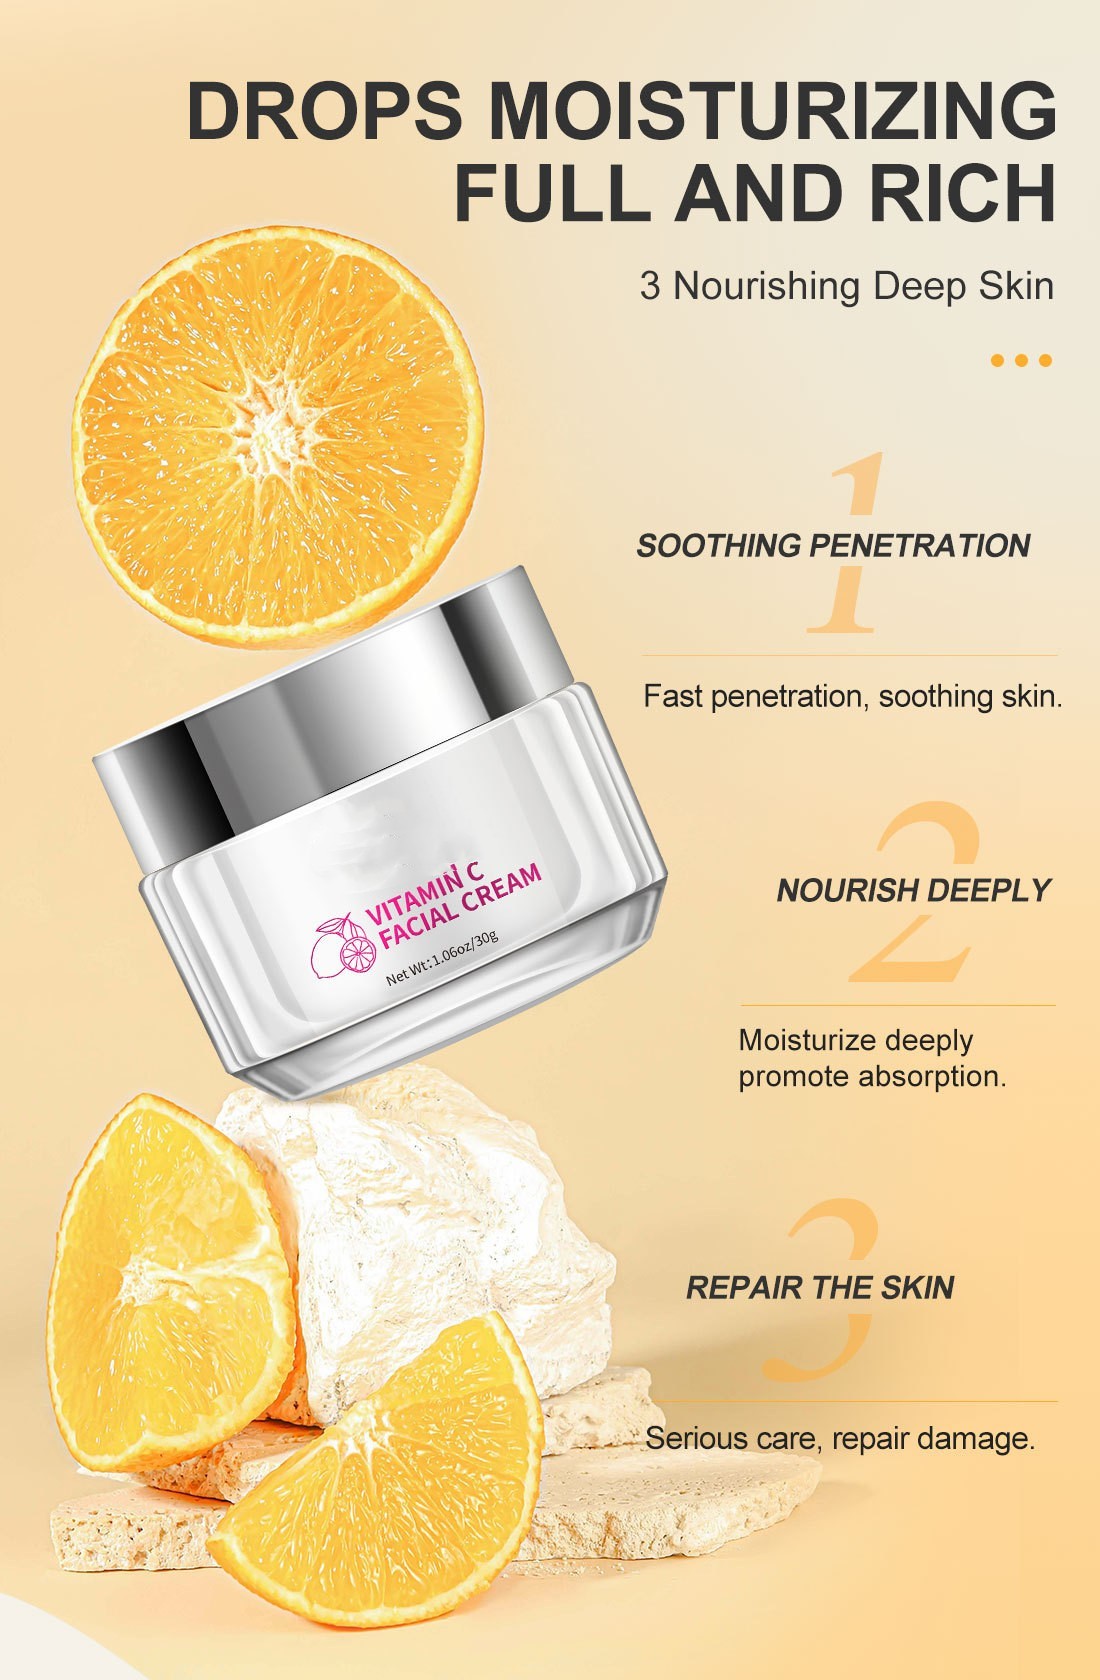 Crema facial con vitamina C Productos para el cuidado de la piel